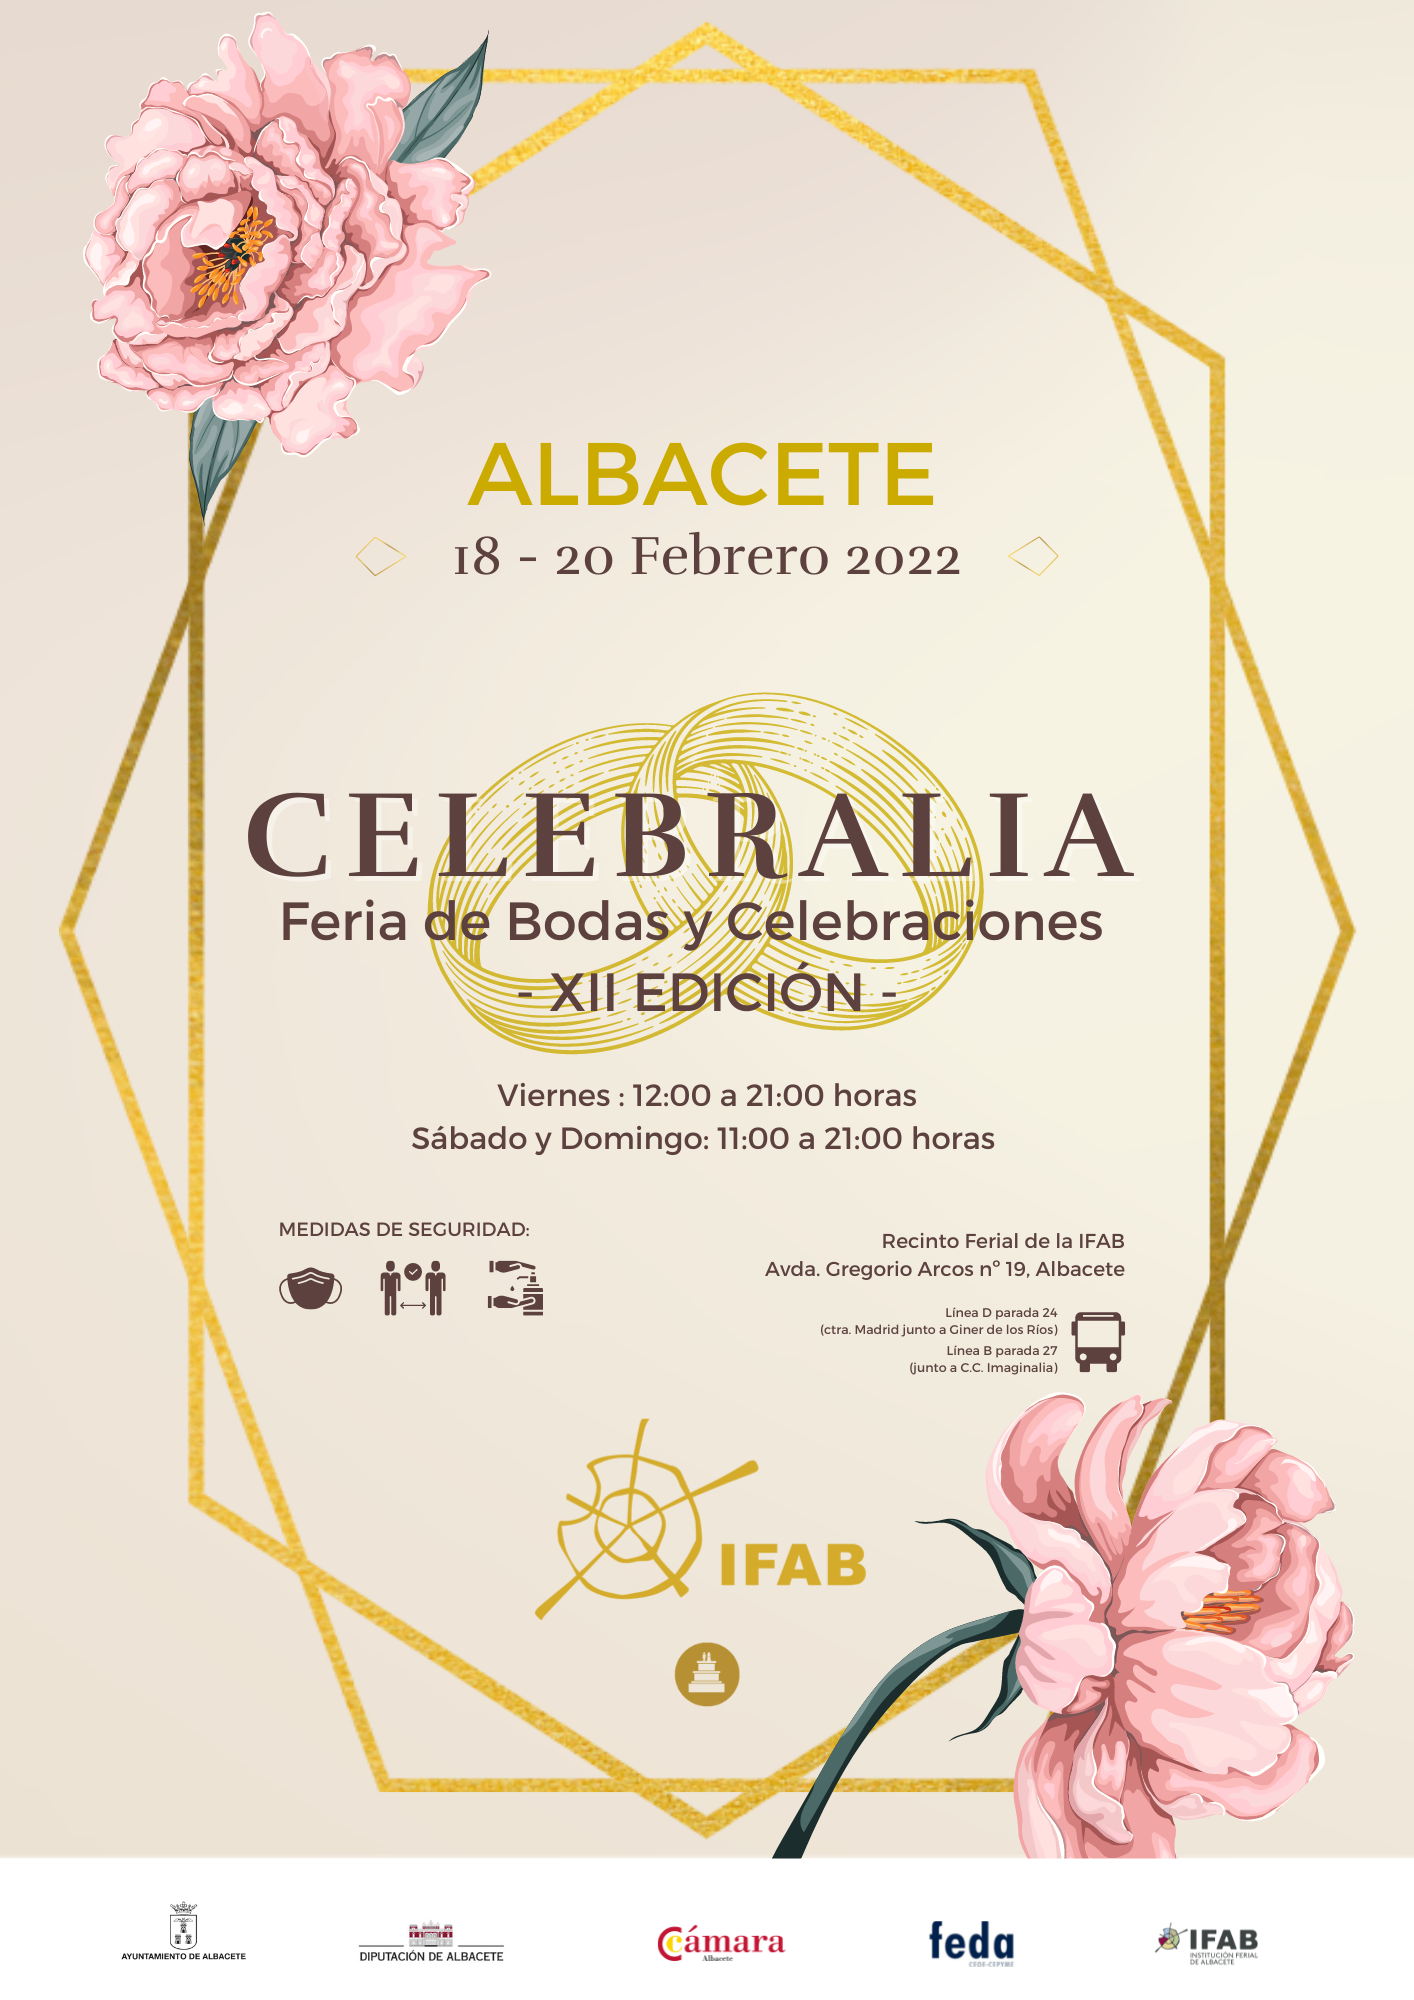 Celebralia tendrá lugar del 19 al 20 de febrero en IFAB, Albacete